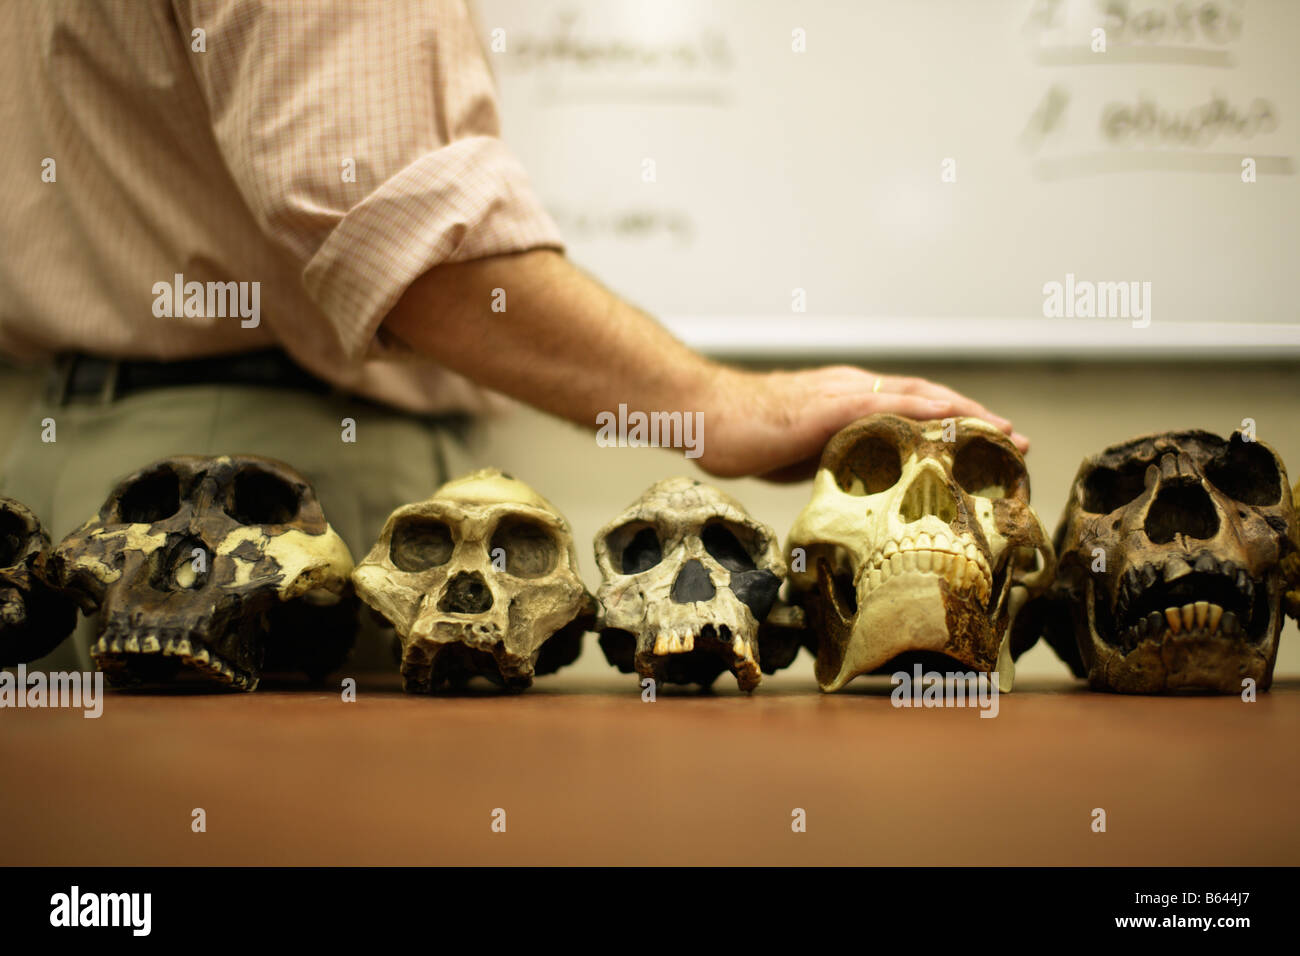 L'enseignement des droits de l'homme avec l'évolution des crânes d'ancêtres humains modèle Banque D'Images